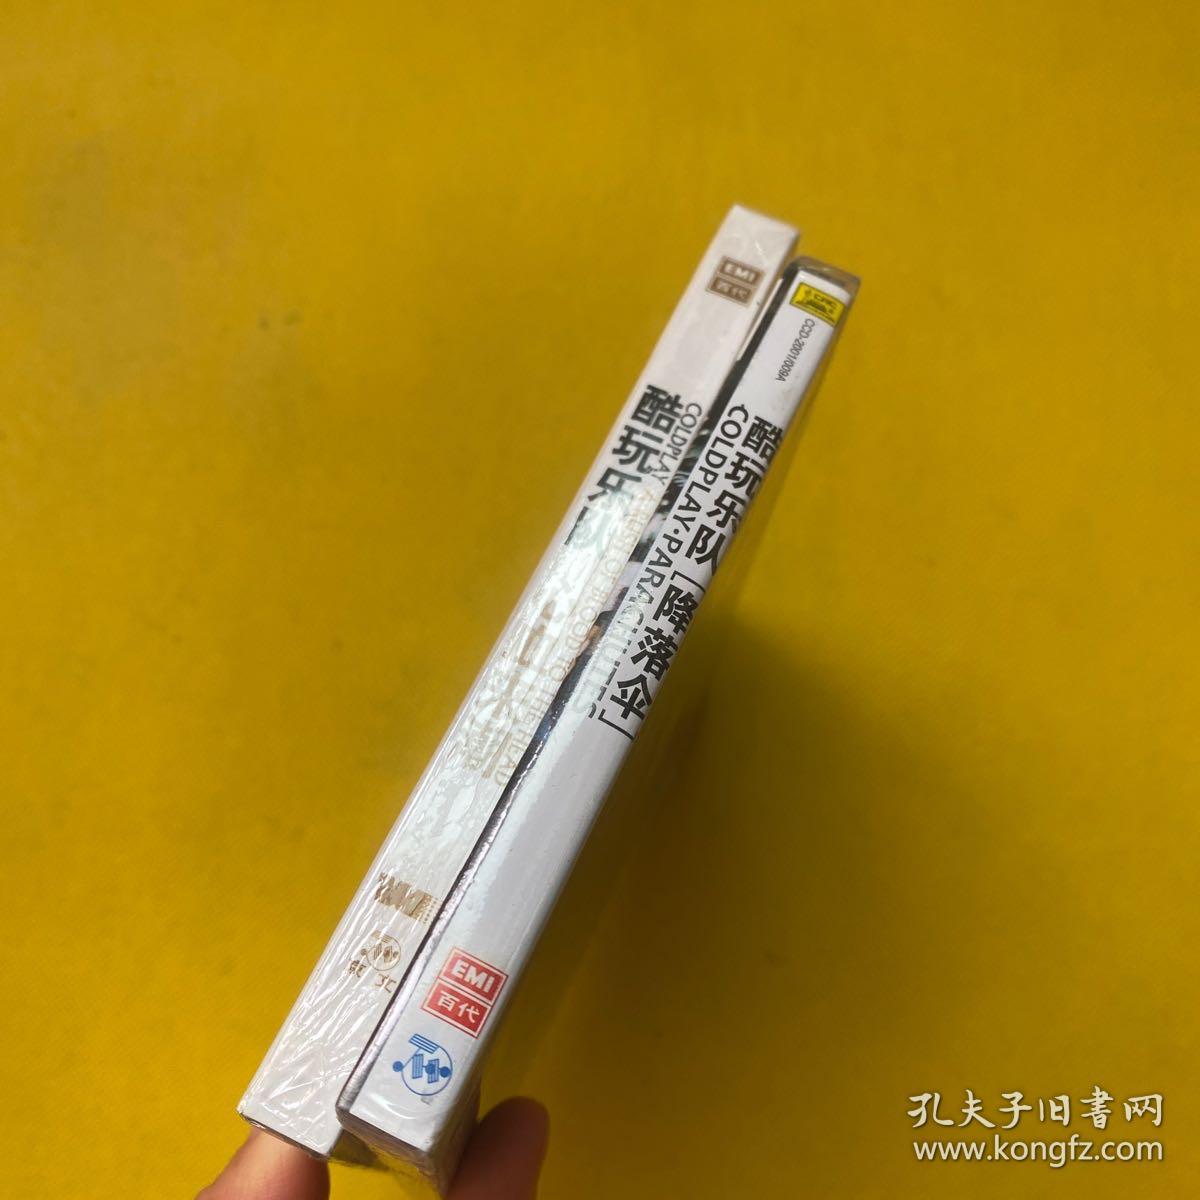 酷玩乐队 降落伞+心血来潮（CD）2盒合售 全新未拆包装